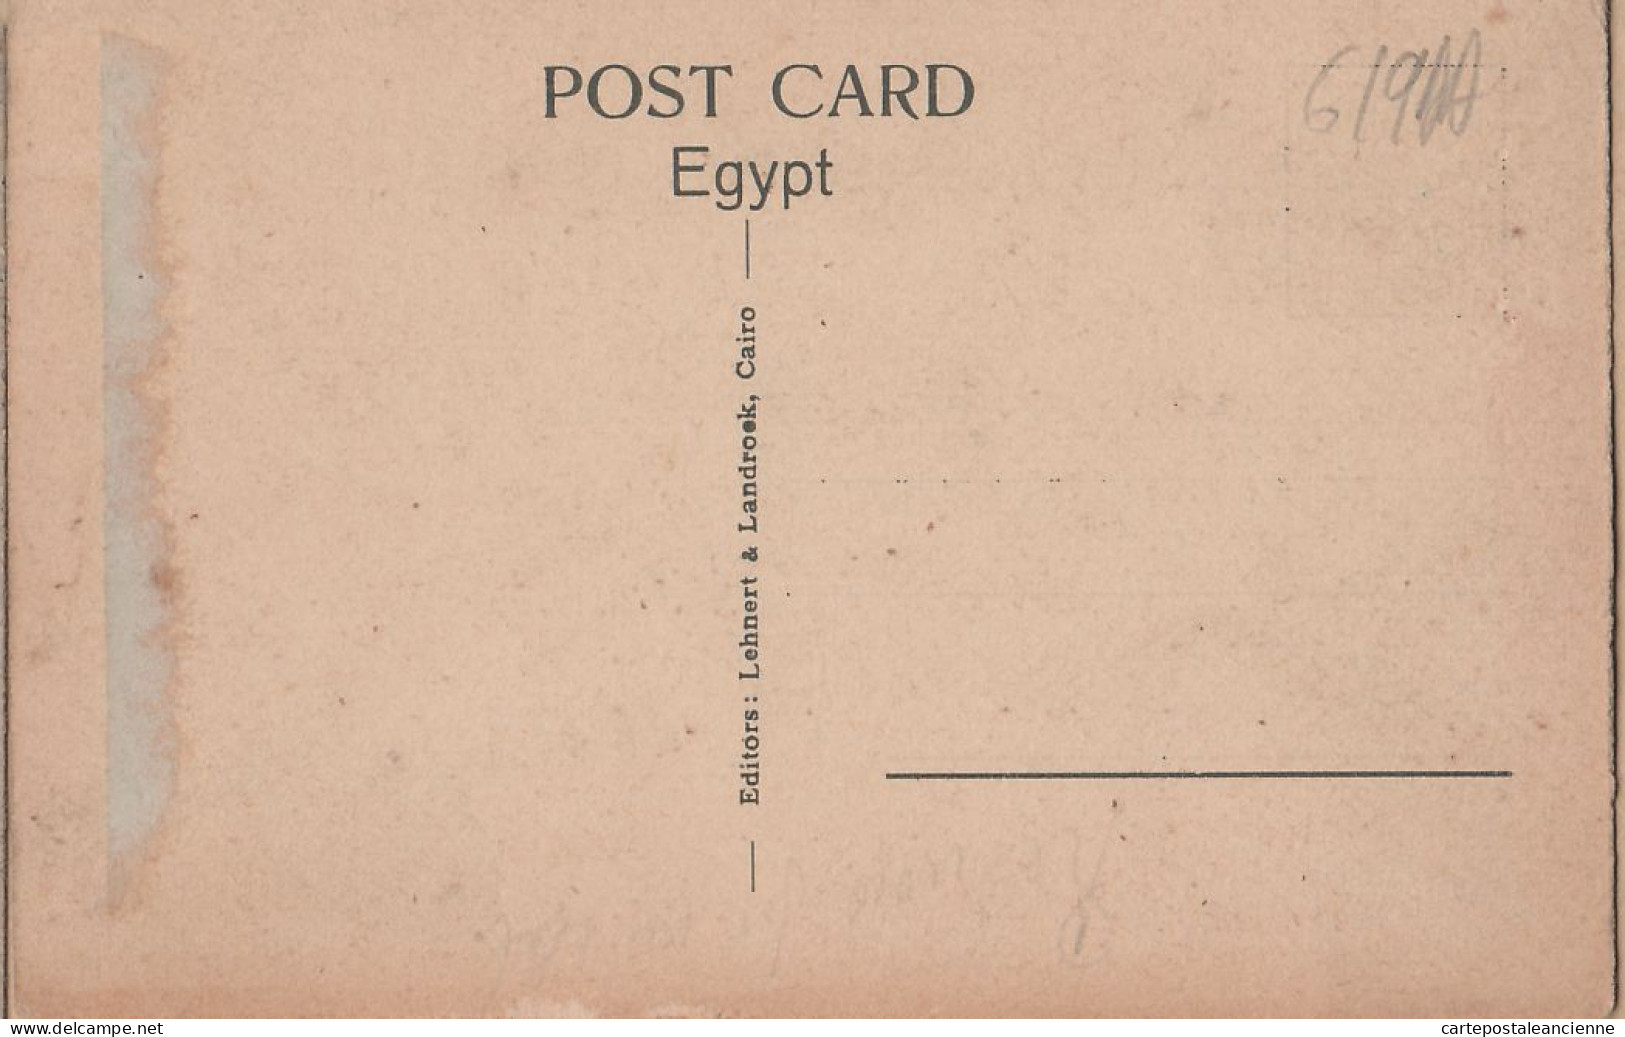 01833 / Egypt CAIRO In The Bazaars LE CAIRE Les Bazars 1920s - LEHNERT LANDROCK 1117 Egypte Agypten Egipto Egitto - Caïro